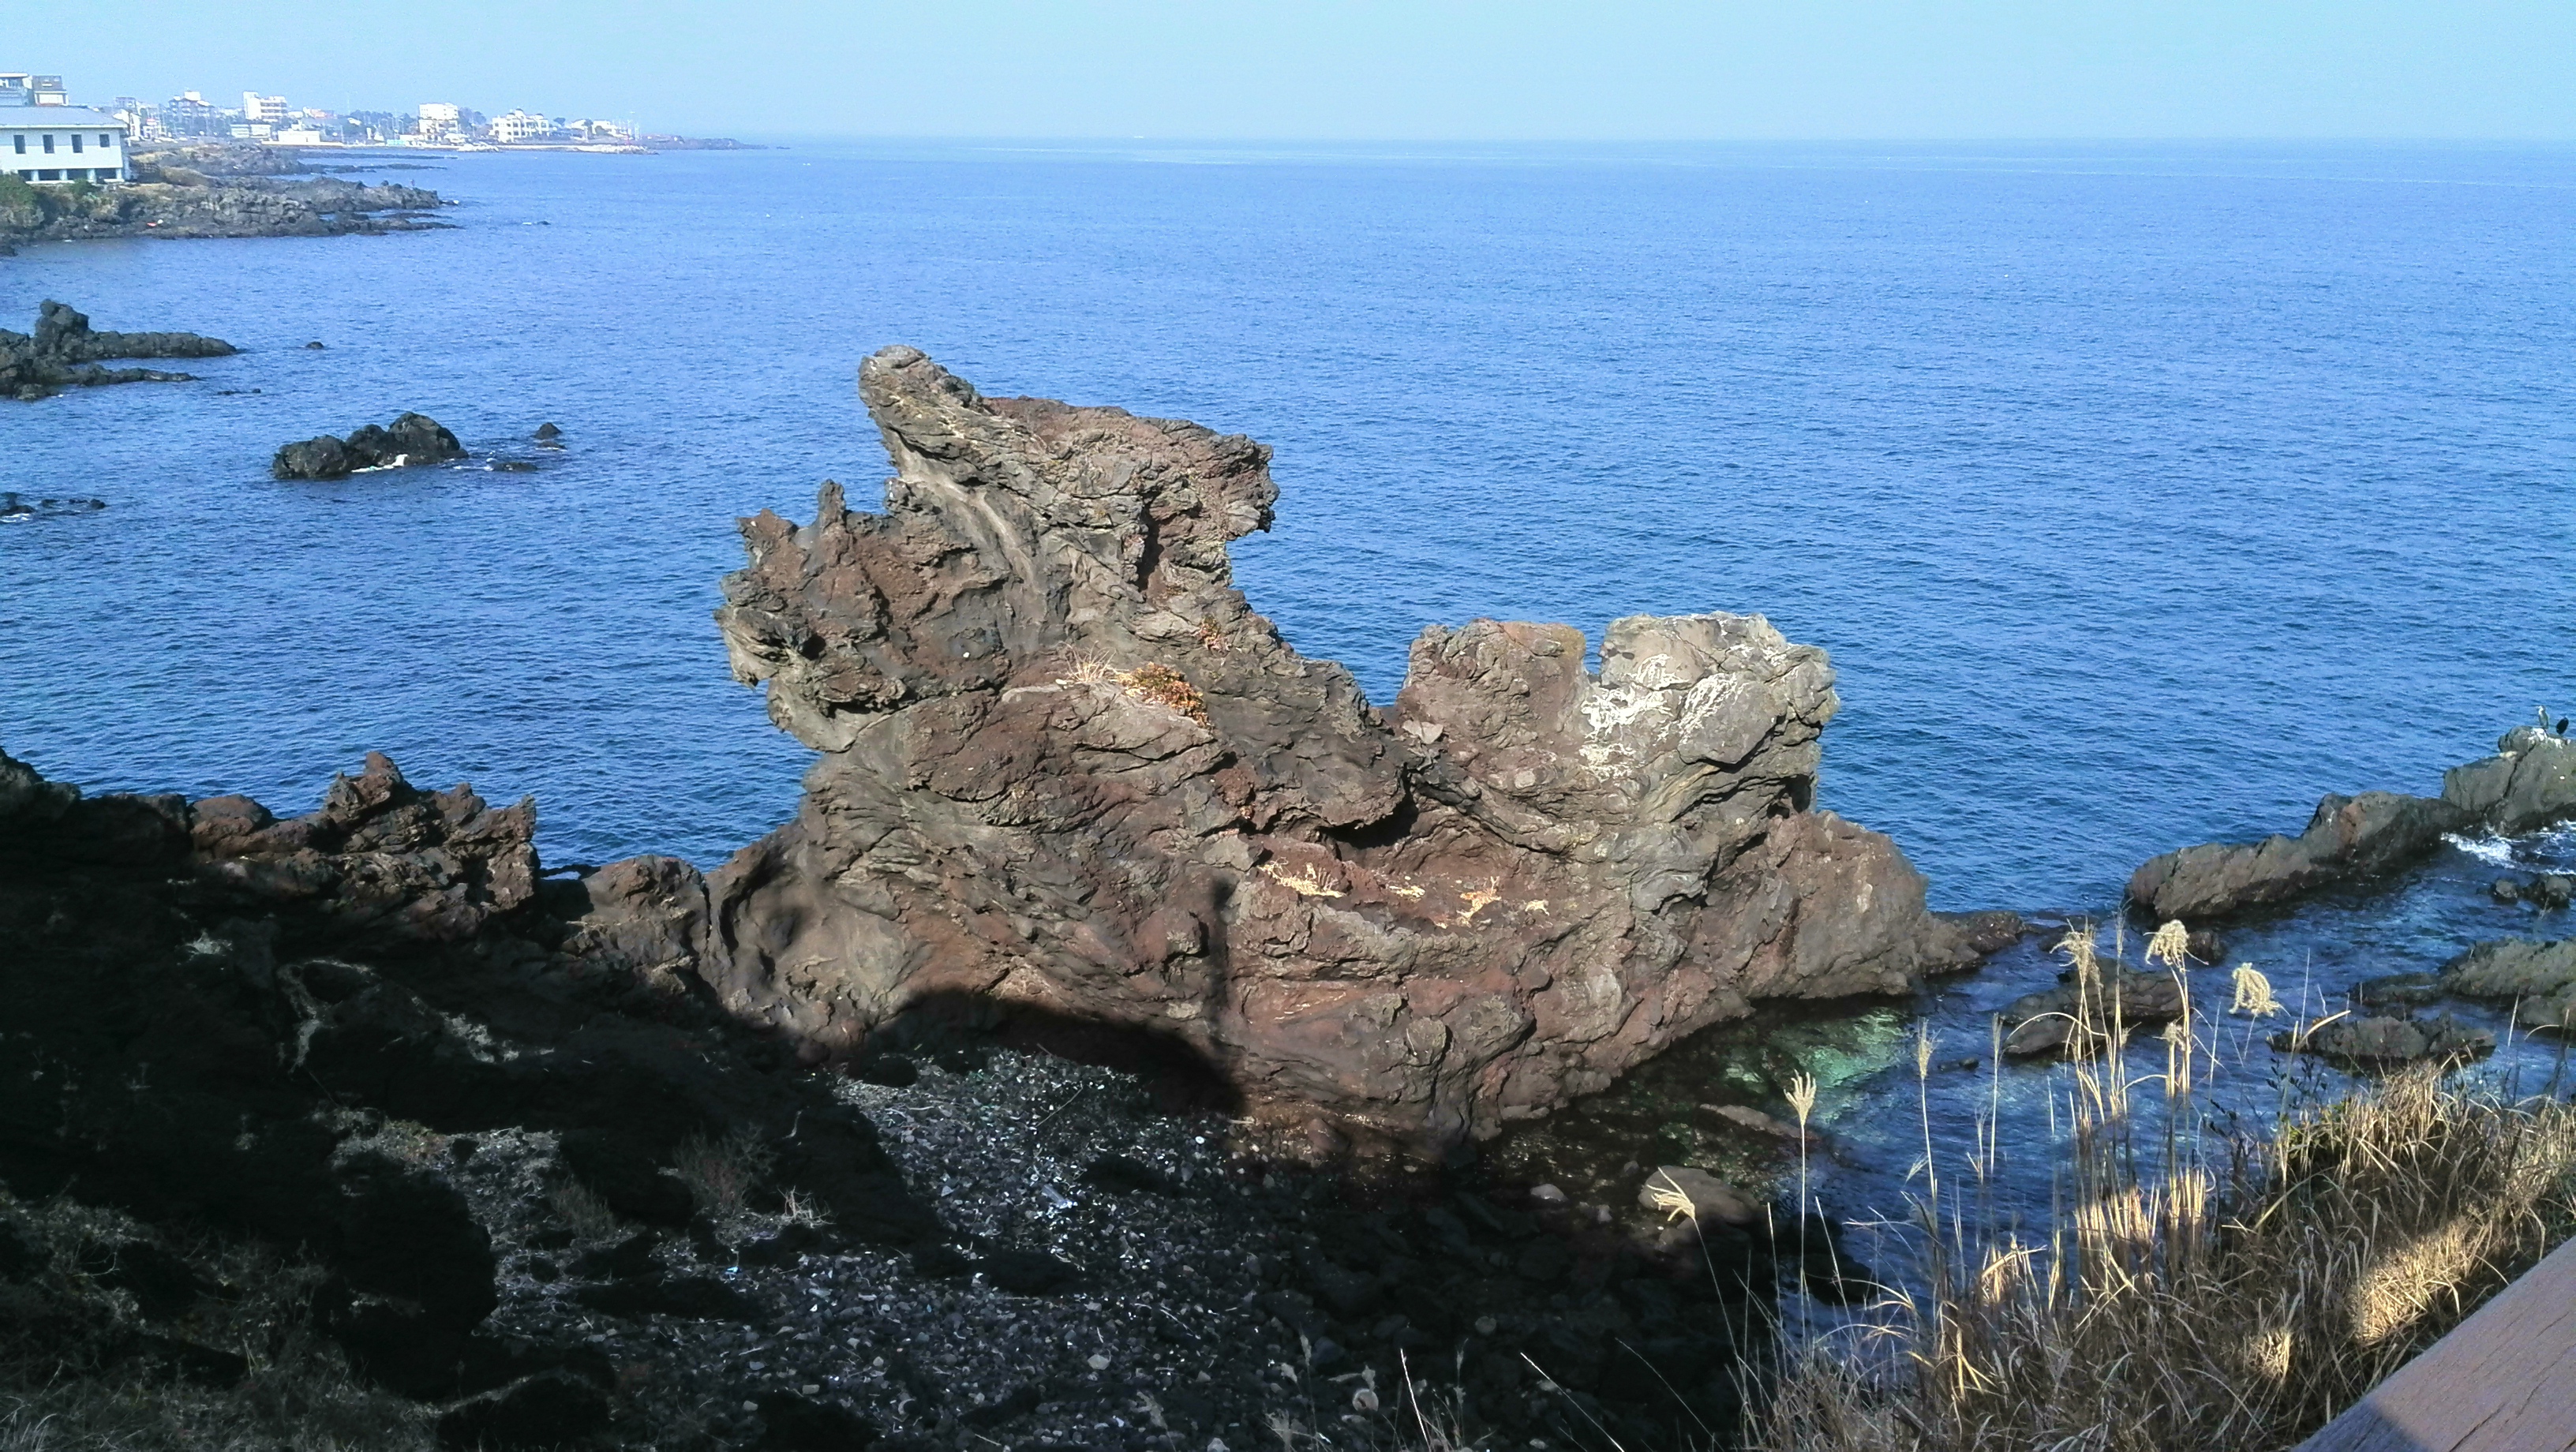 龙头岩怎么觉得像独角兽? 济州岛龙头岩